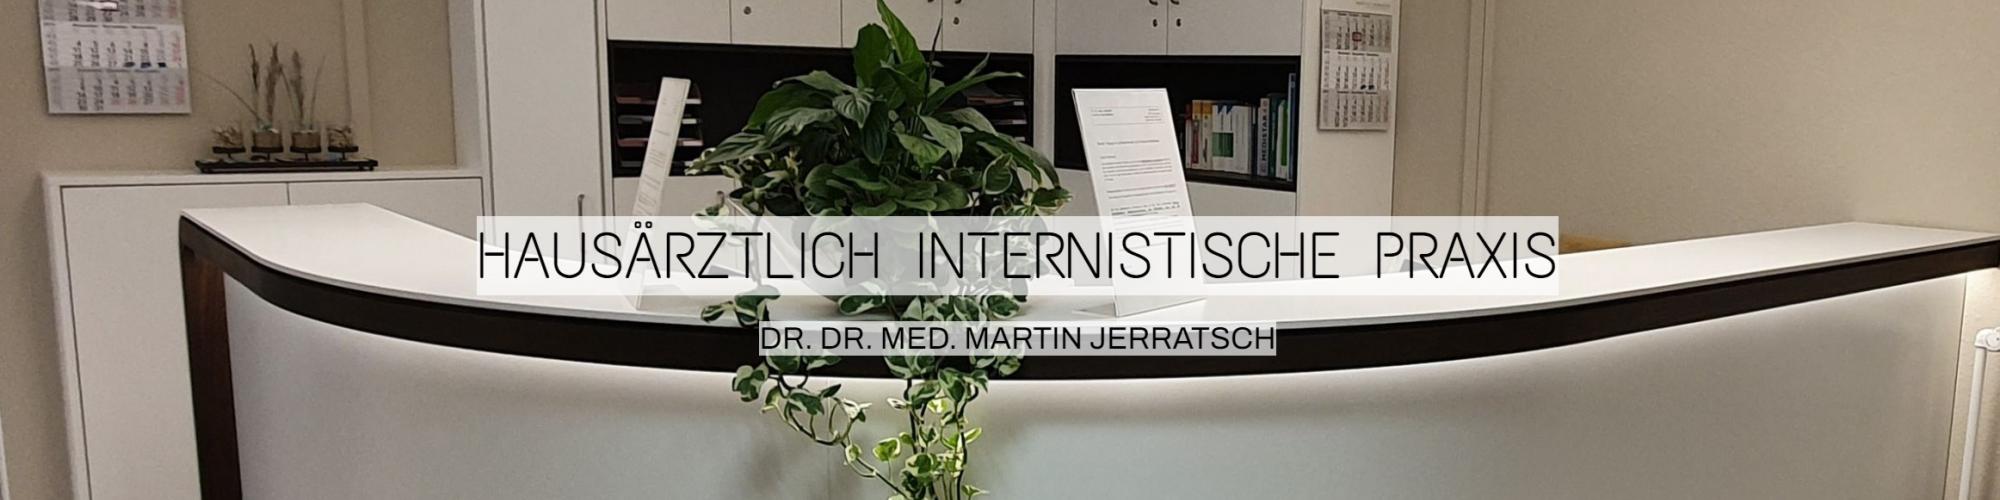 Dr. med. Martin Jerratsch